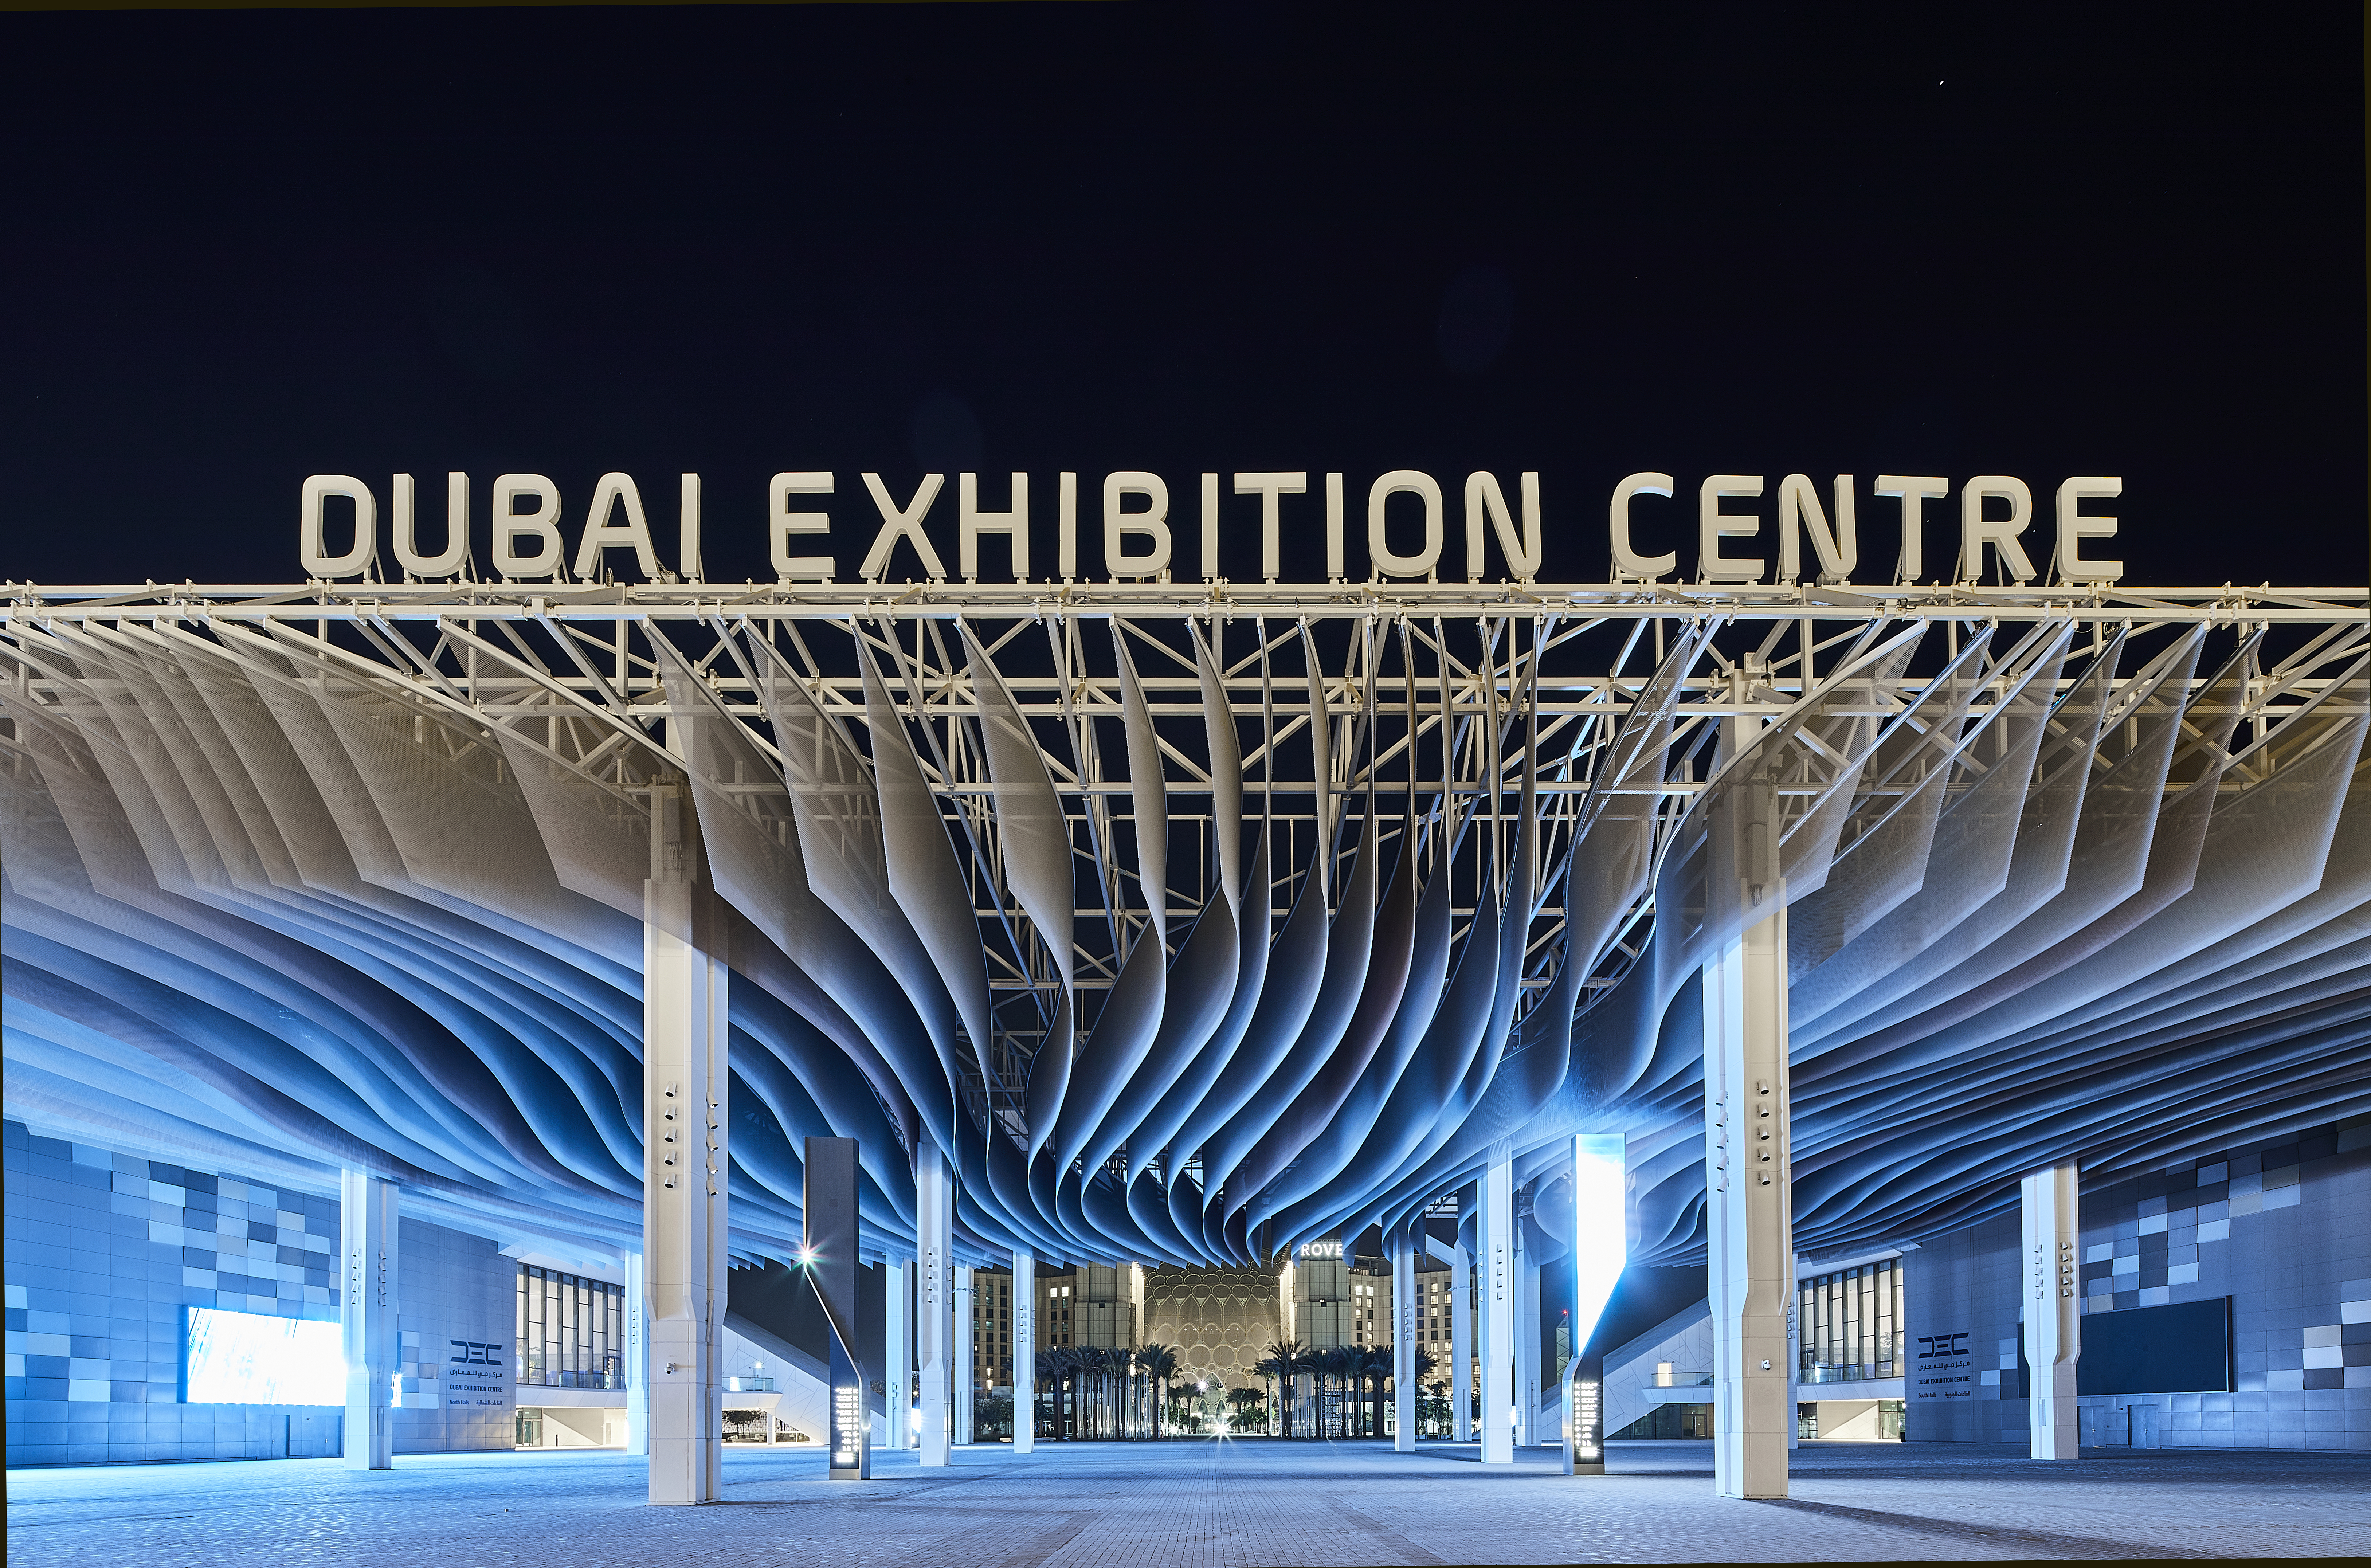 Dubai Exhibition Center